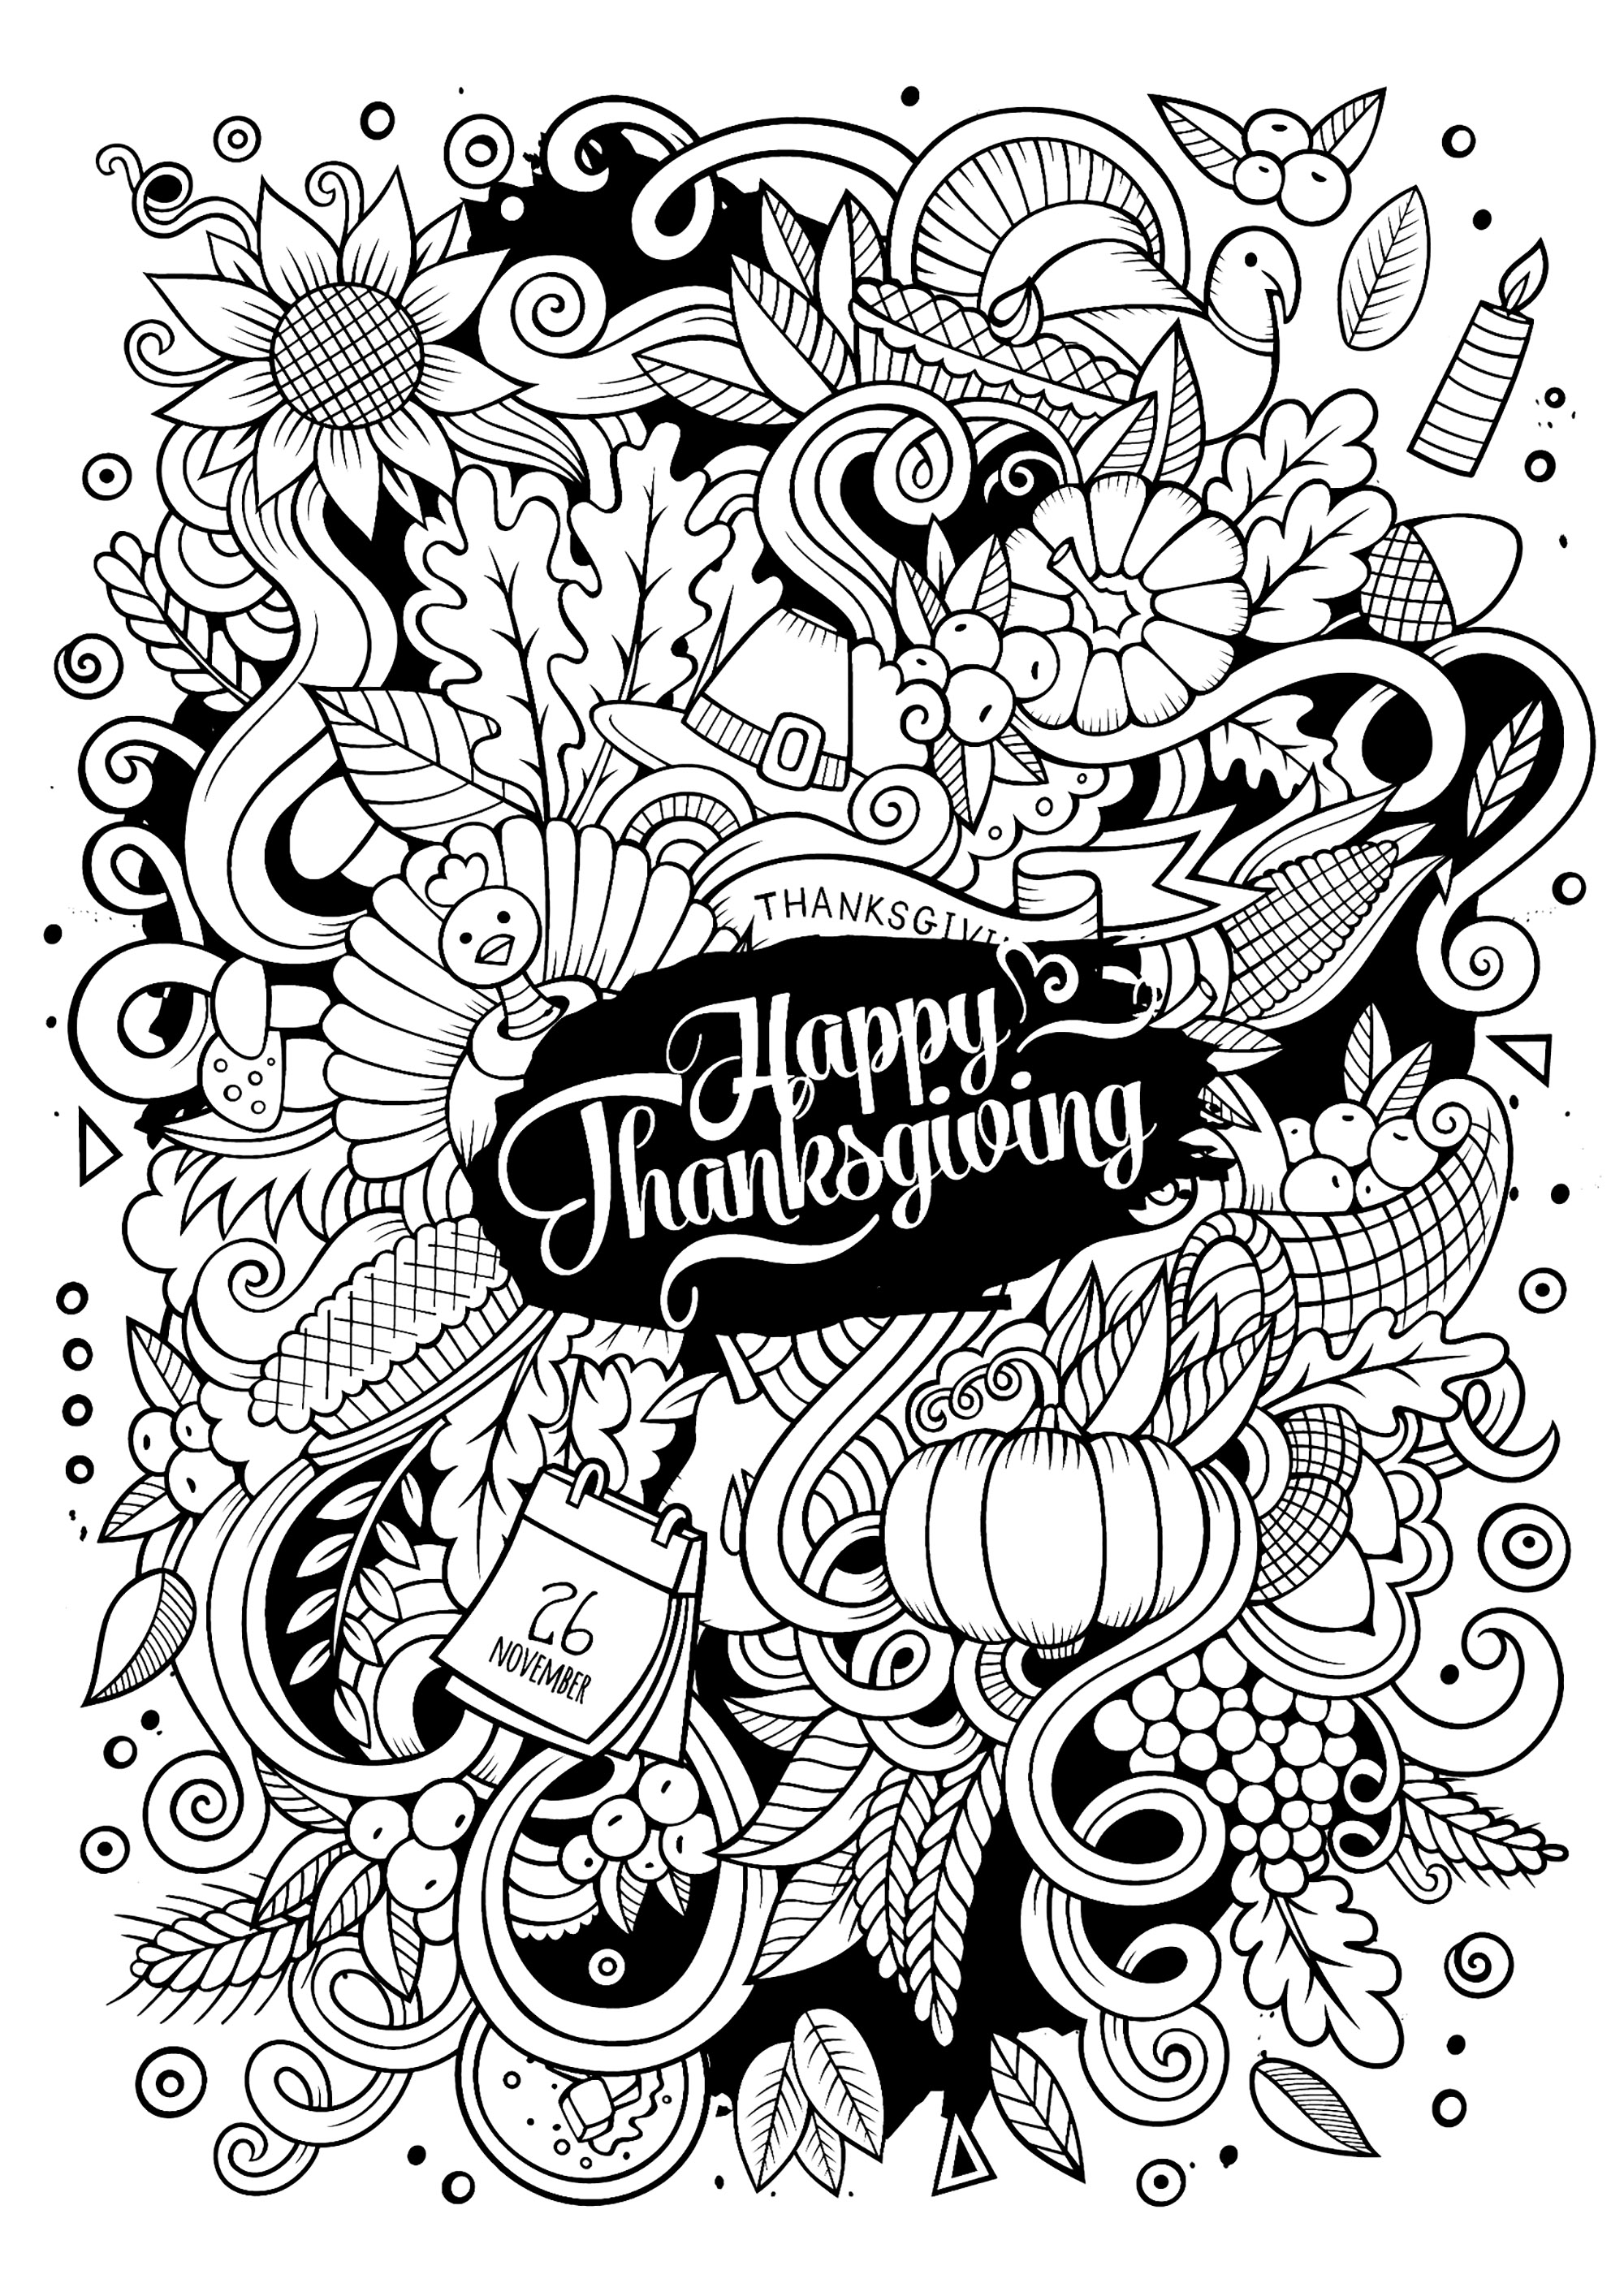 Una página para colorear estilo 'Garabato' para Acción de Gracias. Un montón de bonitos motivos otoñales y de Acción de Gracias para colorear, en una variedad de colores brillantes.